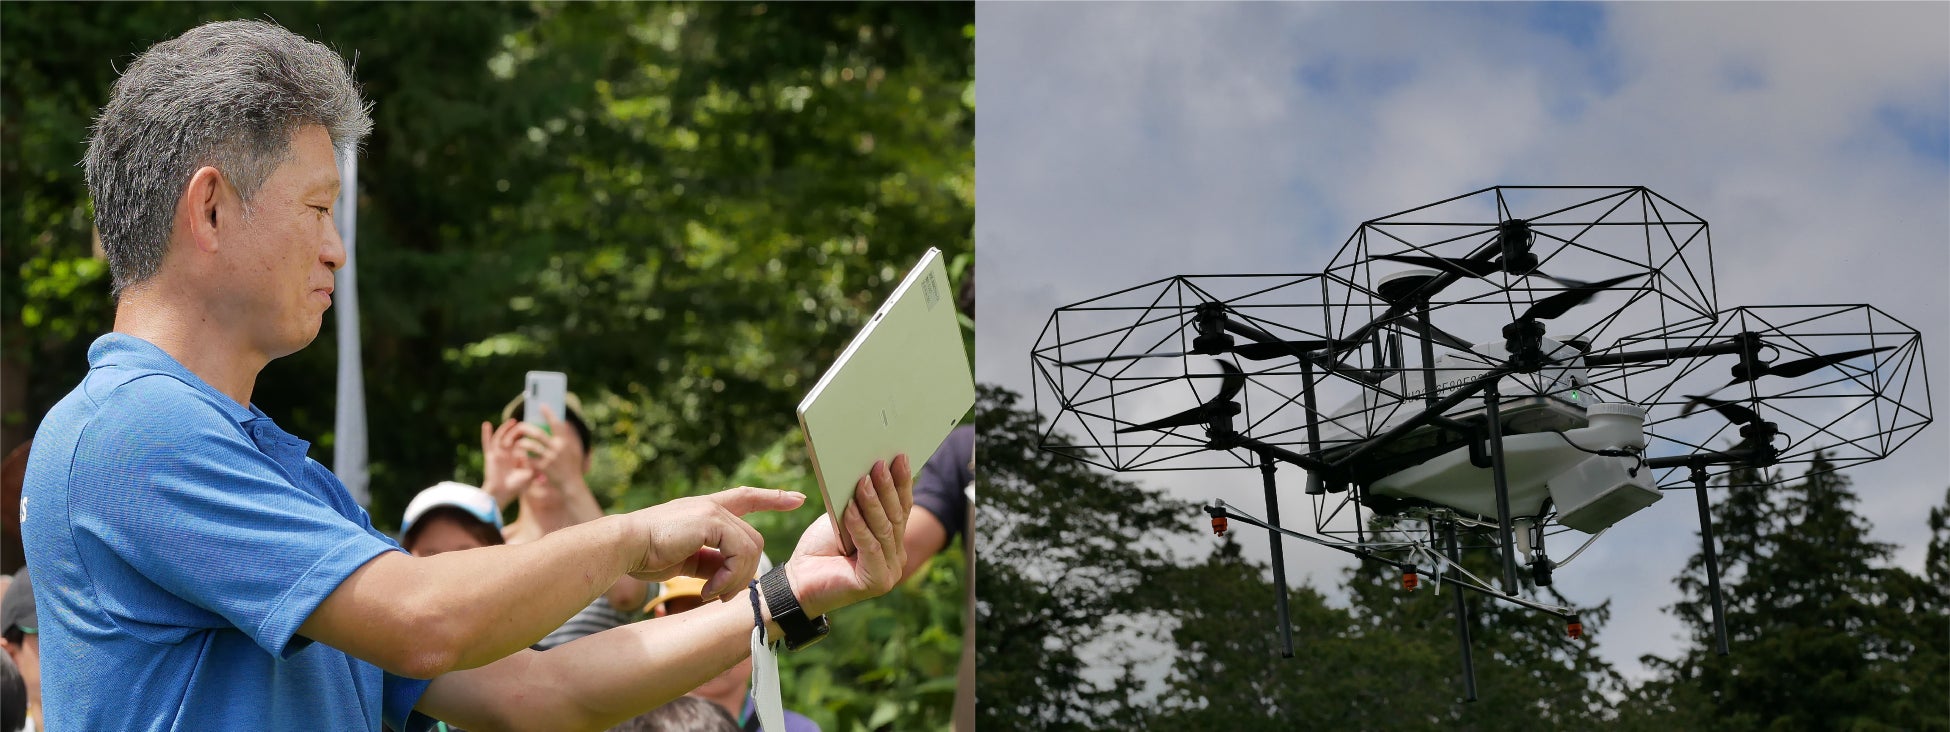 千葉市の小学生、働く農機を体験のサブ画像4_ナイルワークスのスタッフによるドローン飛行の実演